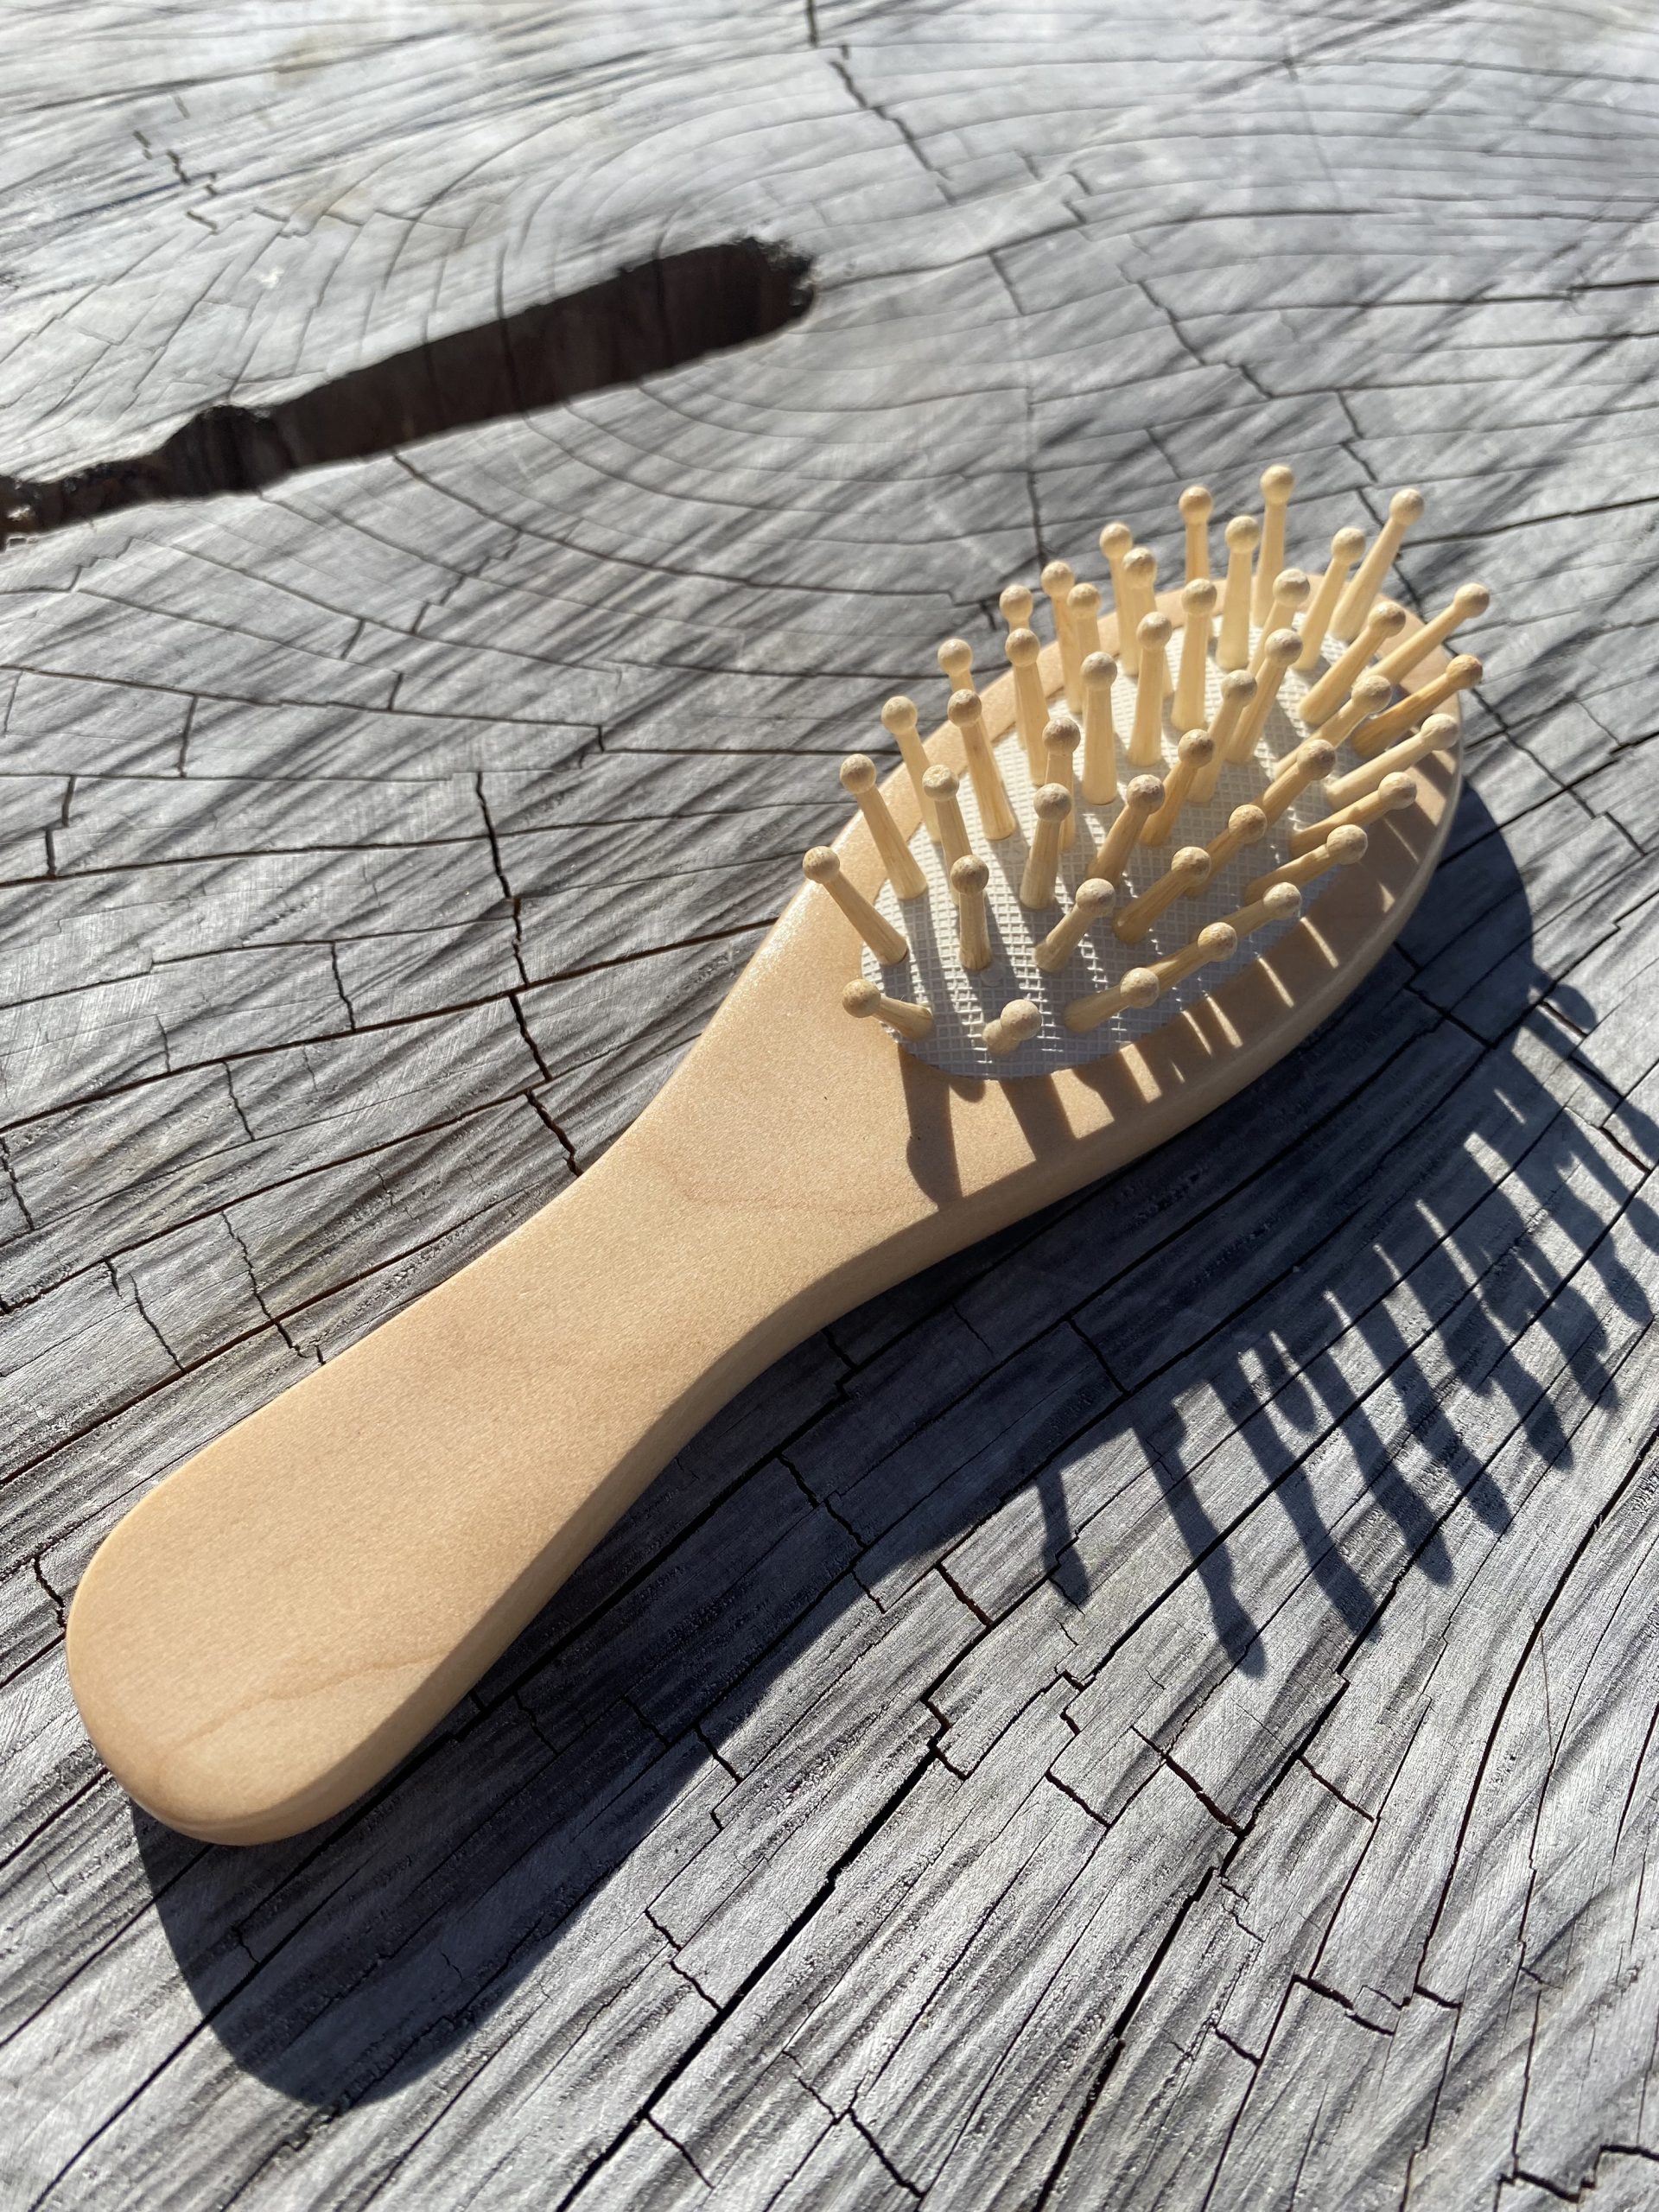 Cepillo de Pelo en Bambú que estimula el crecimiento, no genera